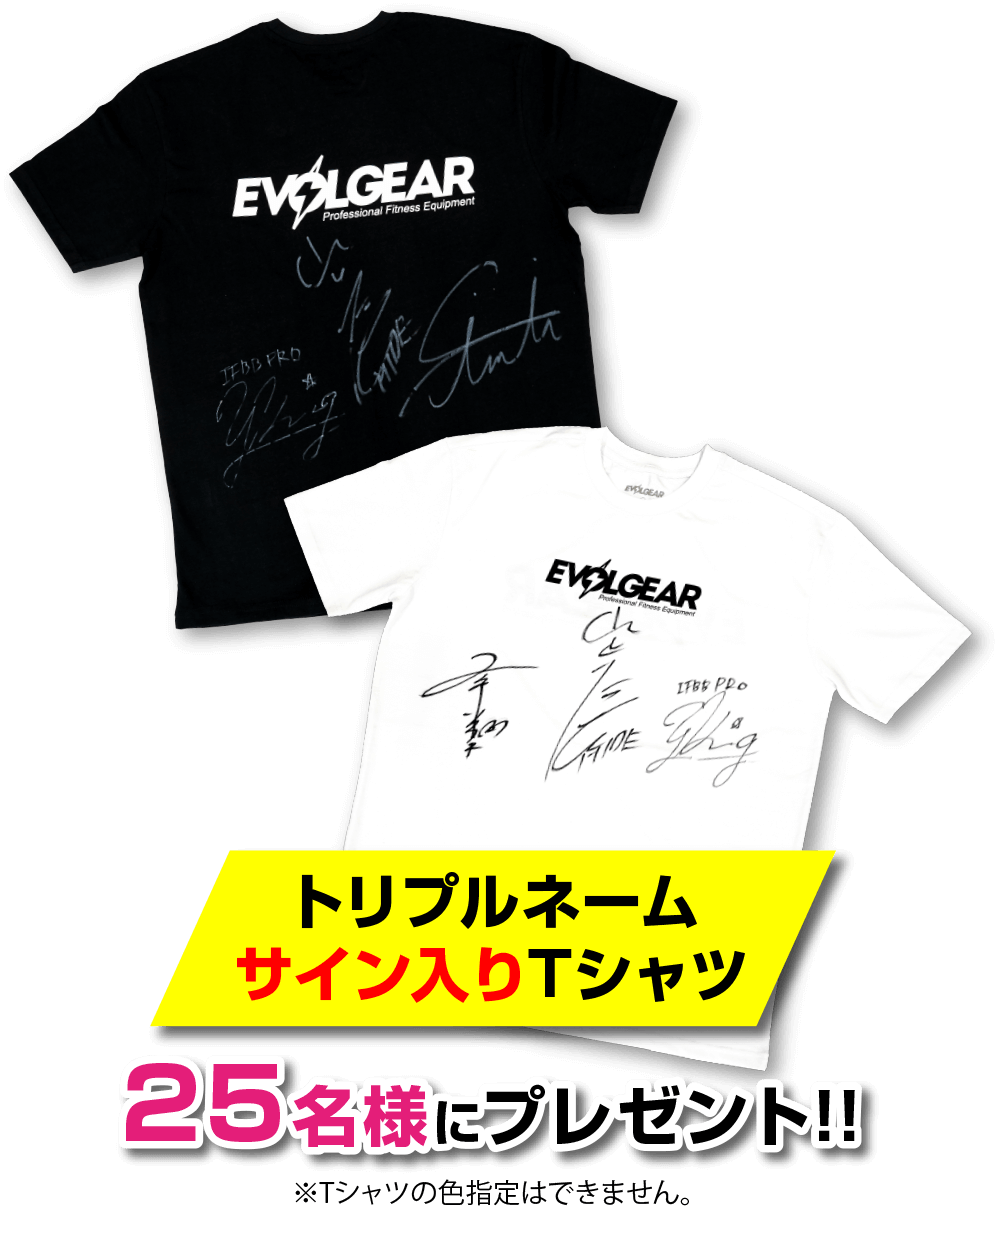 トリプルネームサイン入りTシャツプレゼント企画 | EVOLGEAR 